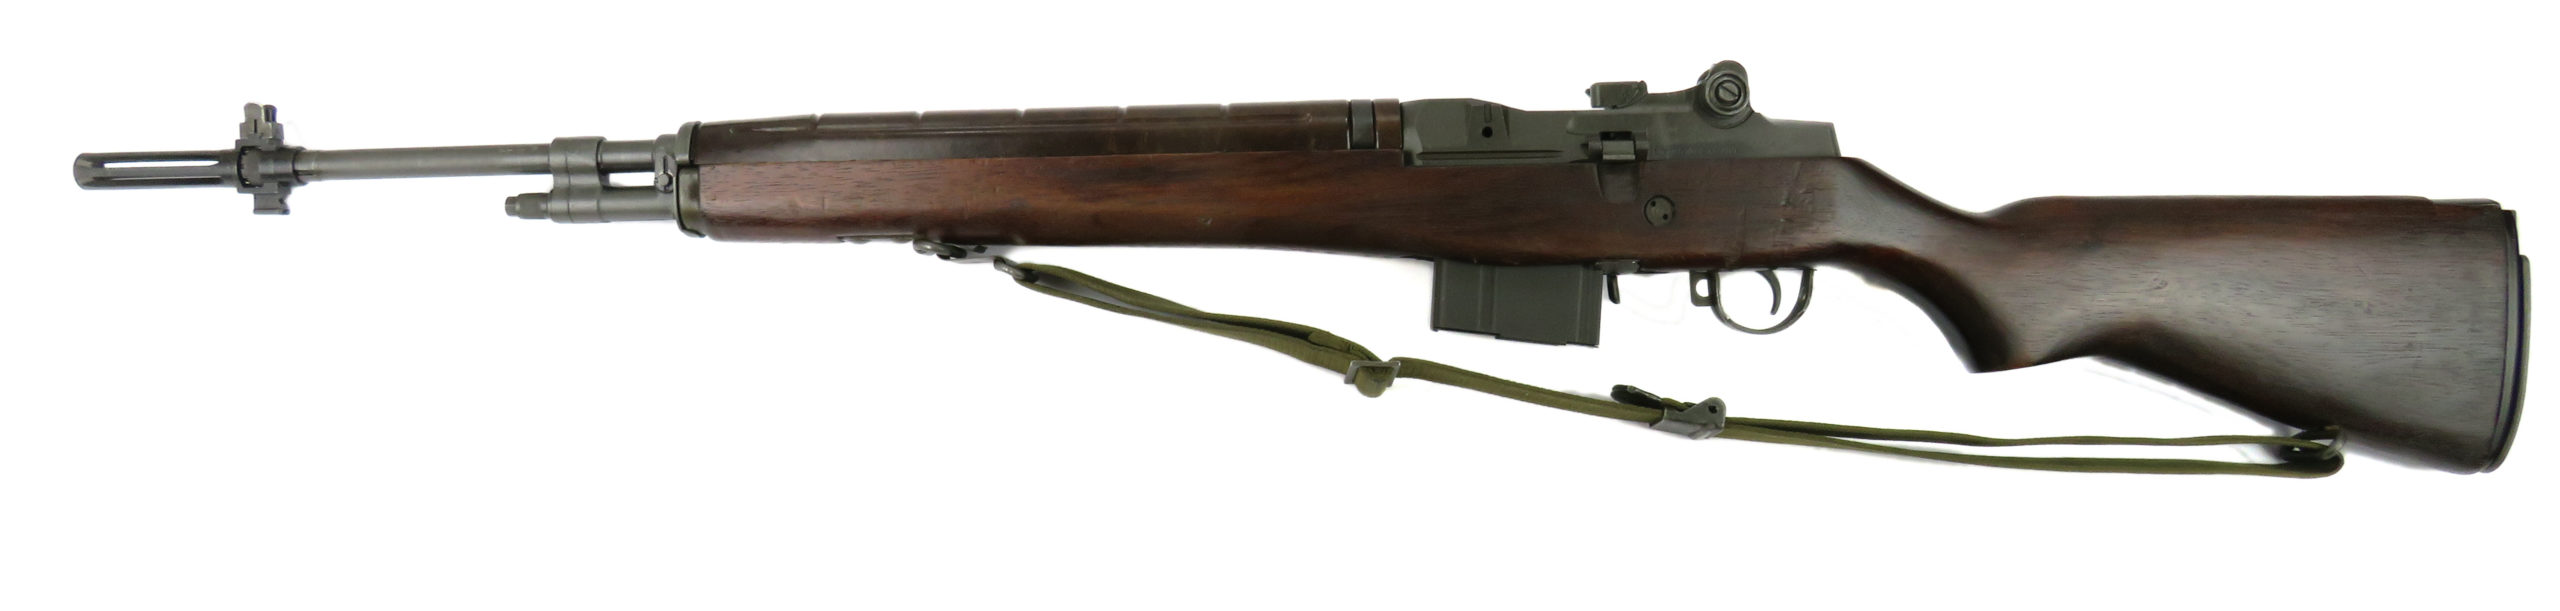 Norinco M14 calibre .308Winchester